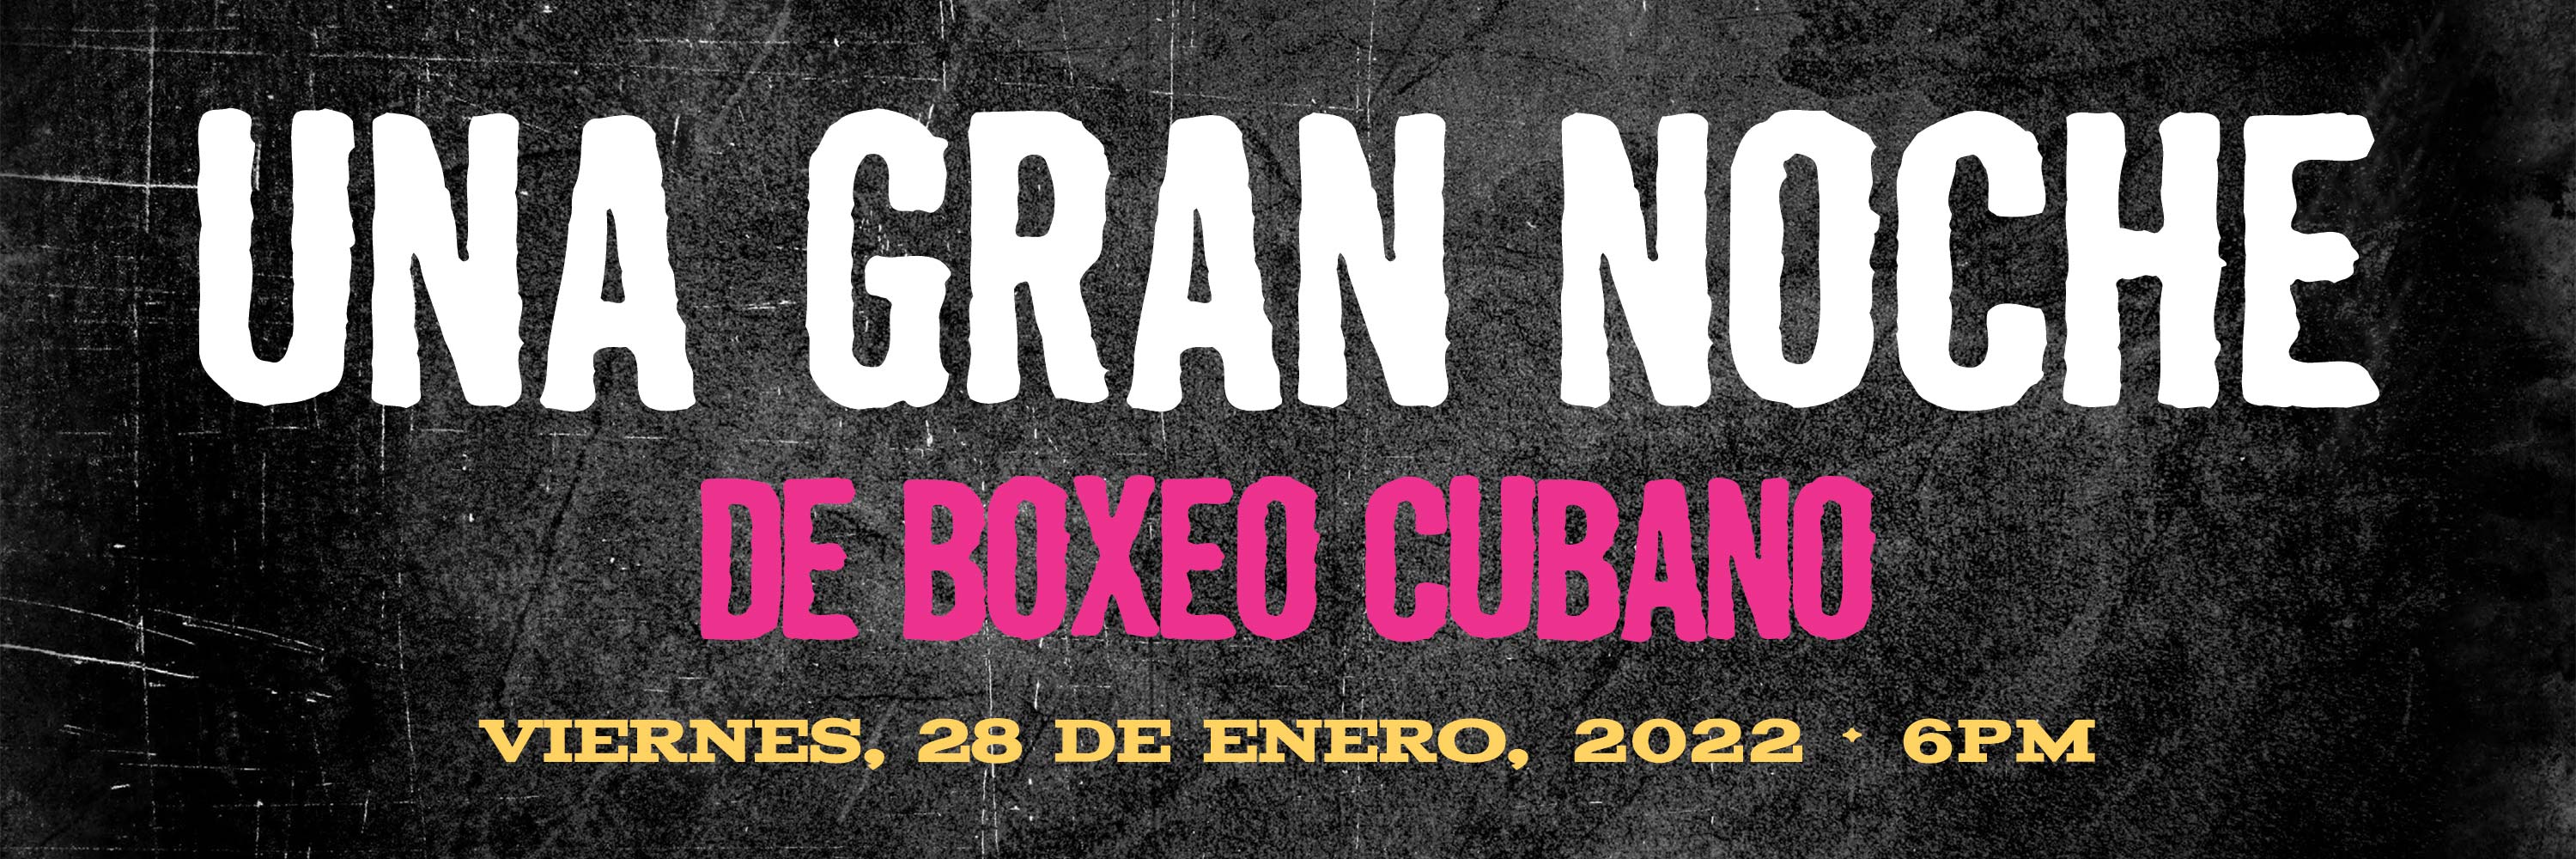 Una Gran Noche de Boxeo Cubano | Viernes, 28 de Enero, 2022 | 6PM